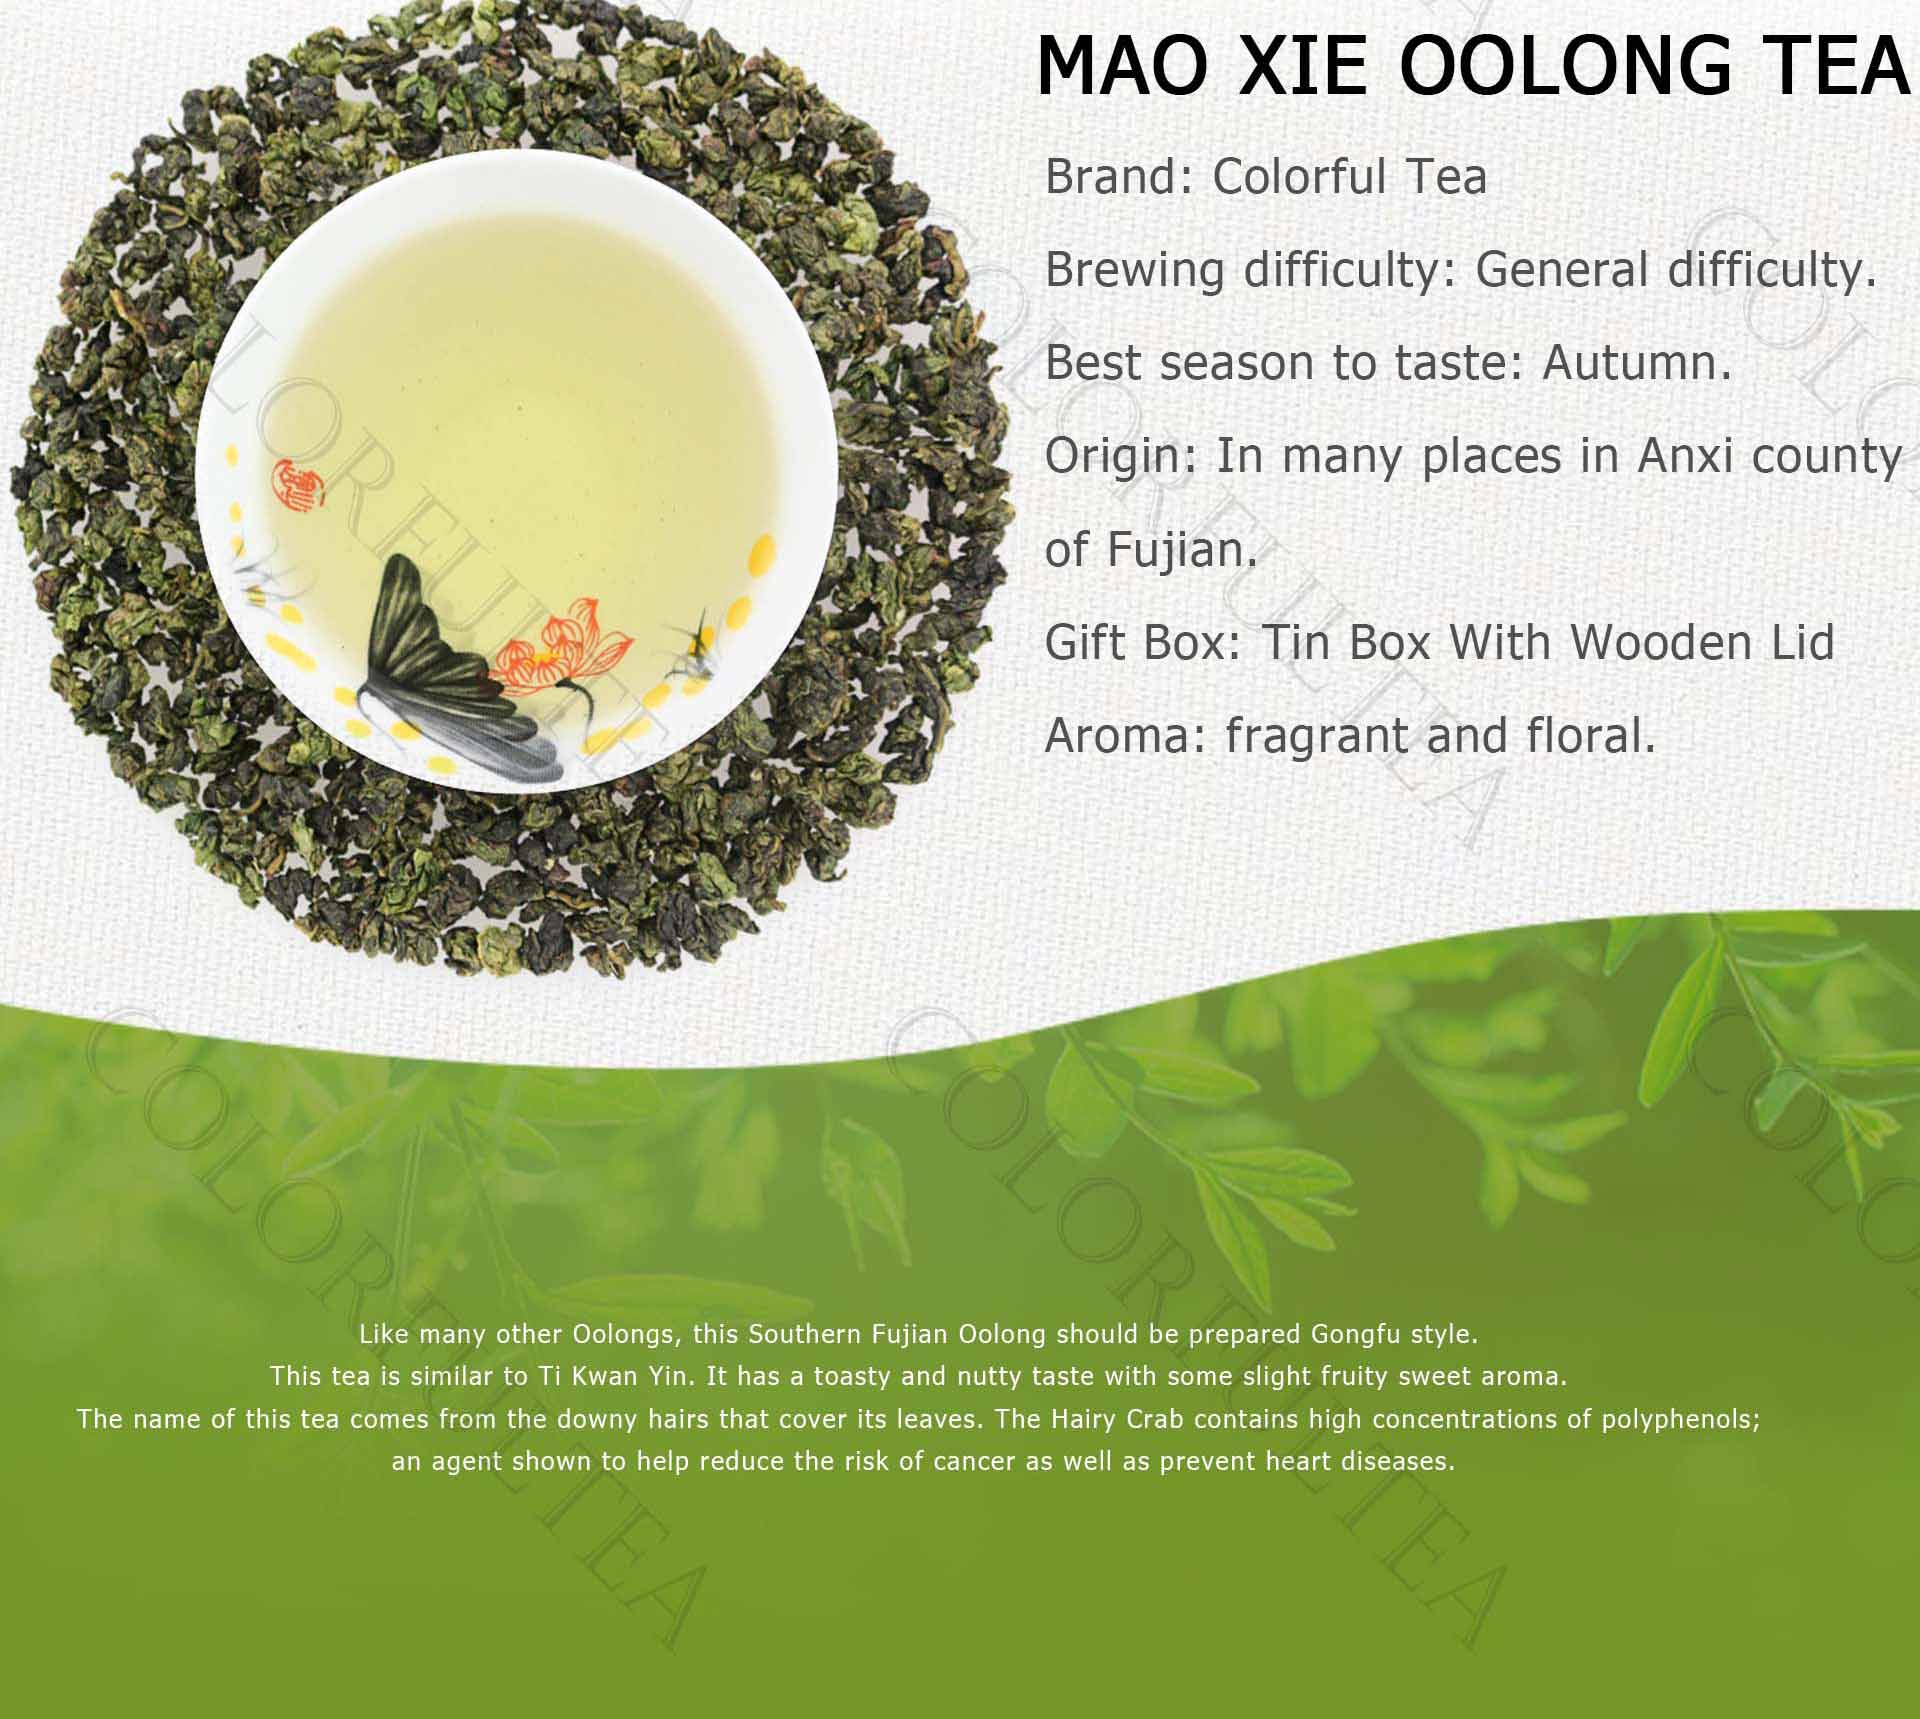 Mao Xie Oolong Tea